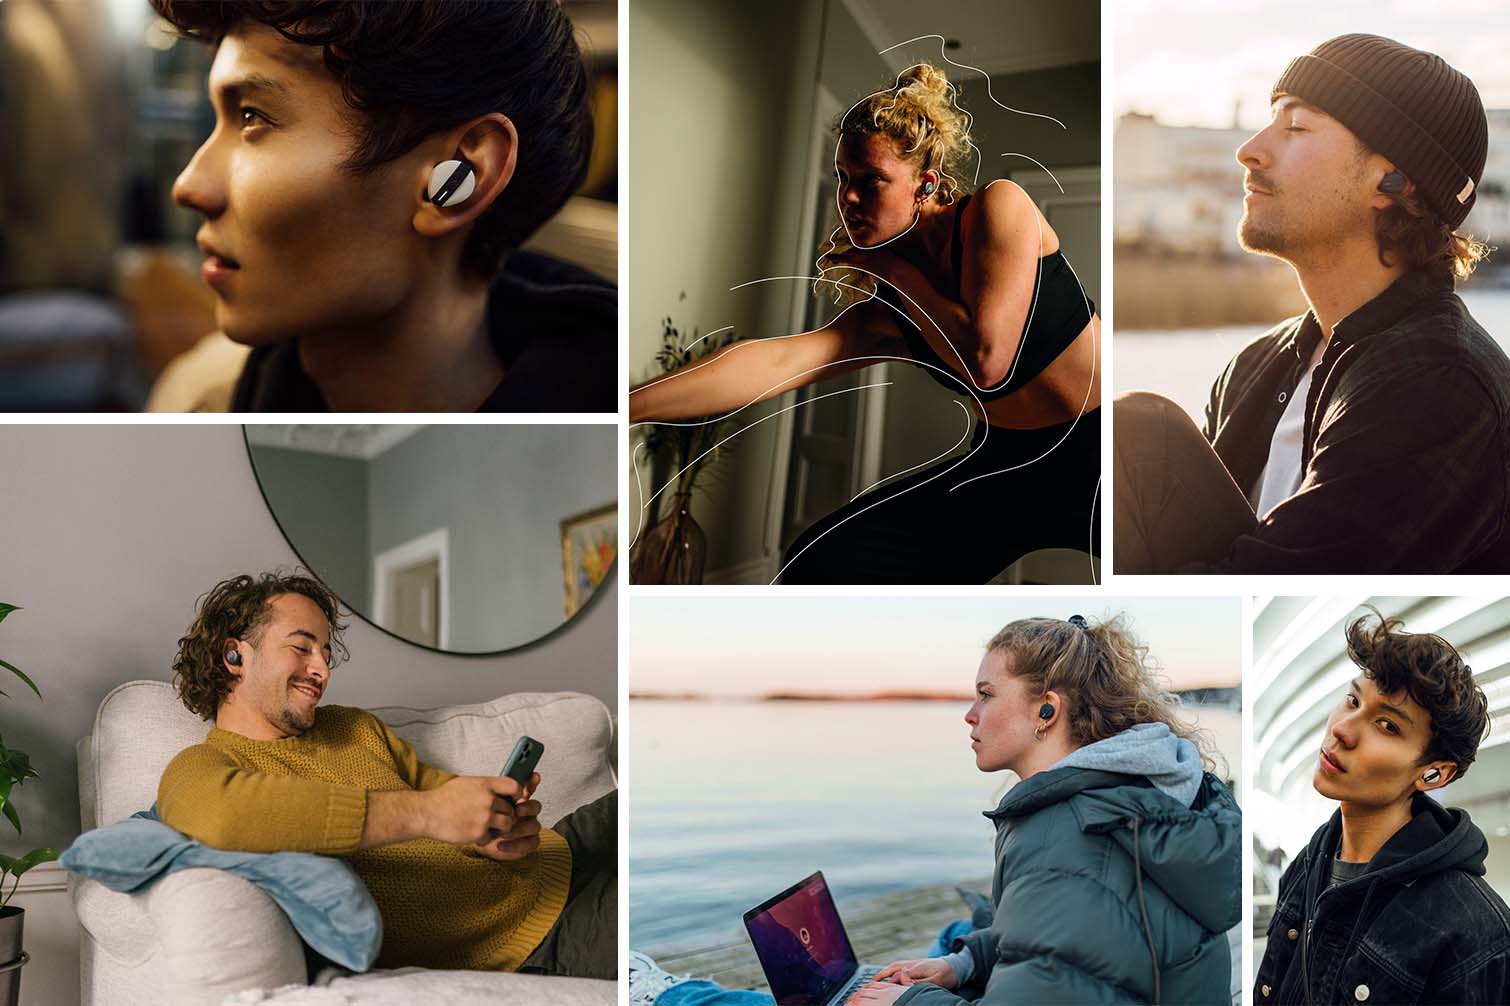 FREE BYRD True Wireless Bluetooth® in-ear headphones